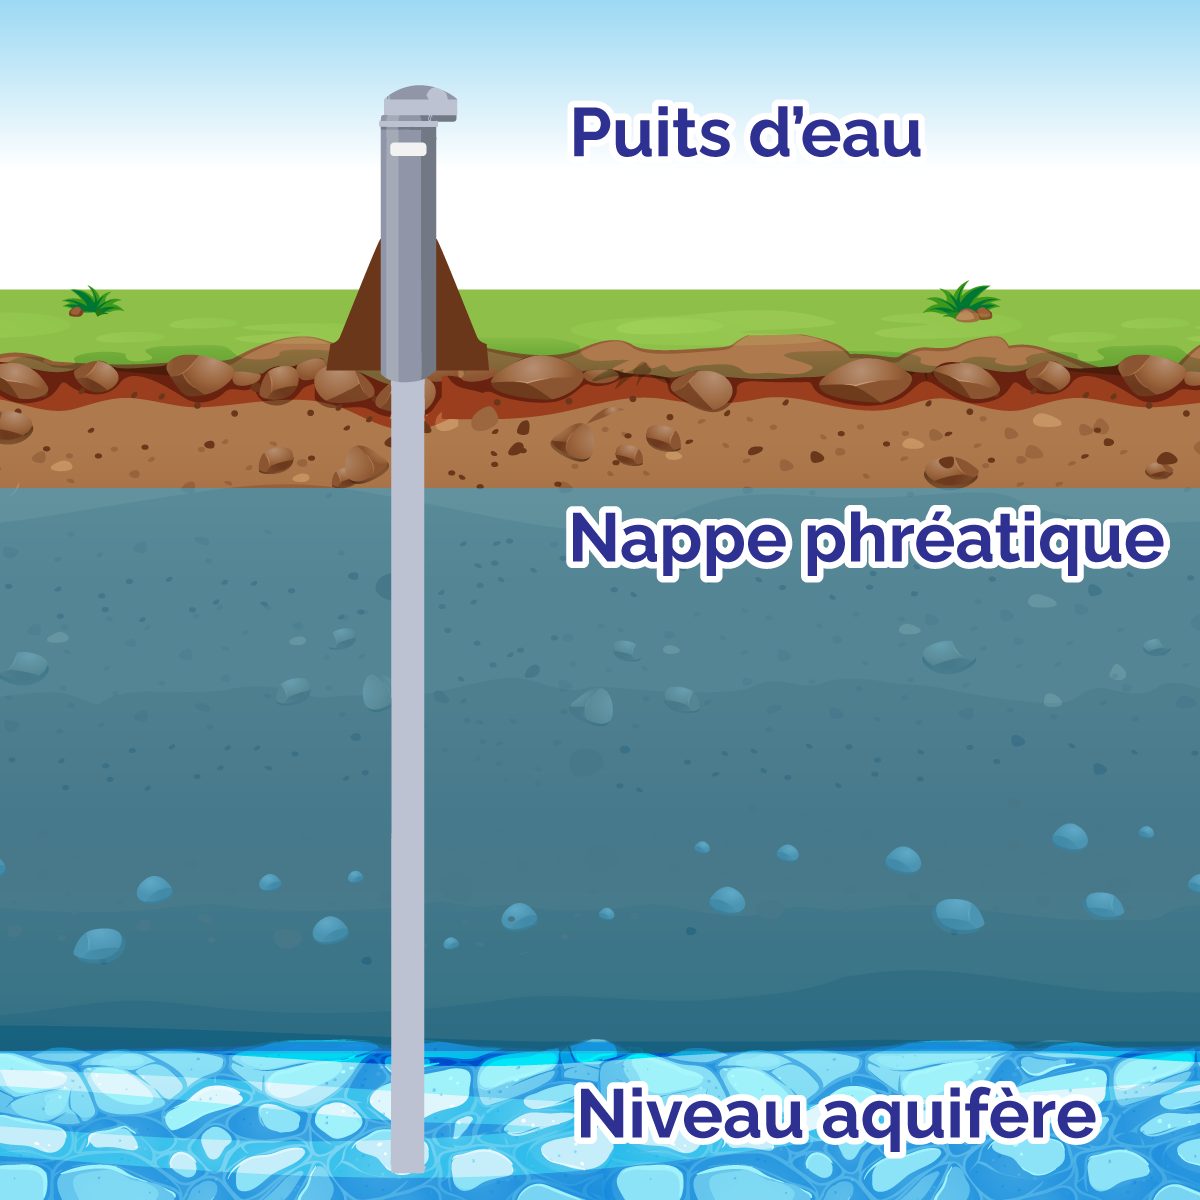 Le graphique montre où se trouvent les eaux souterraines sous la surface du sol.